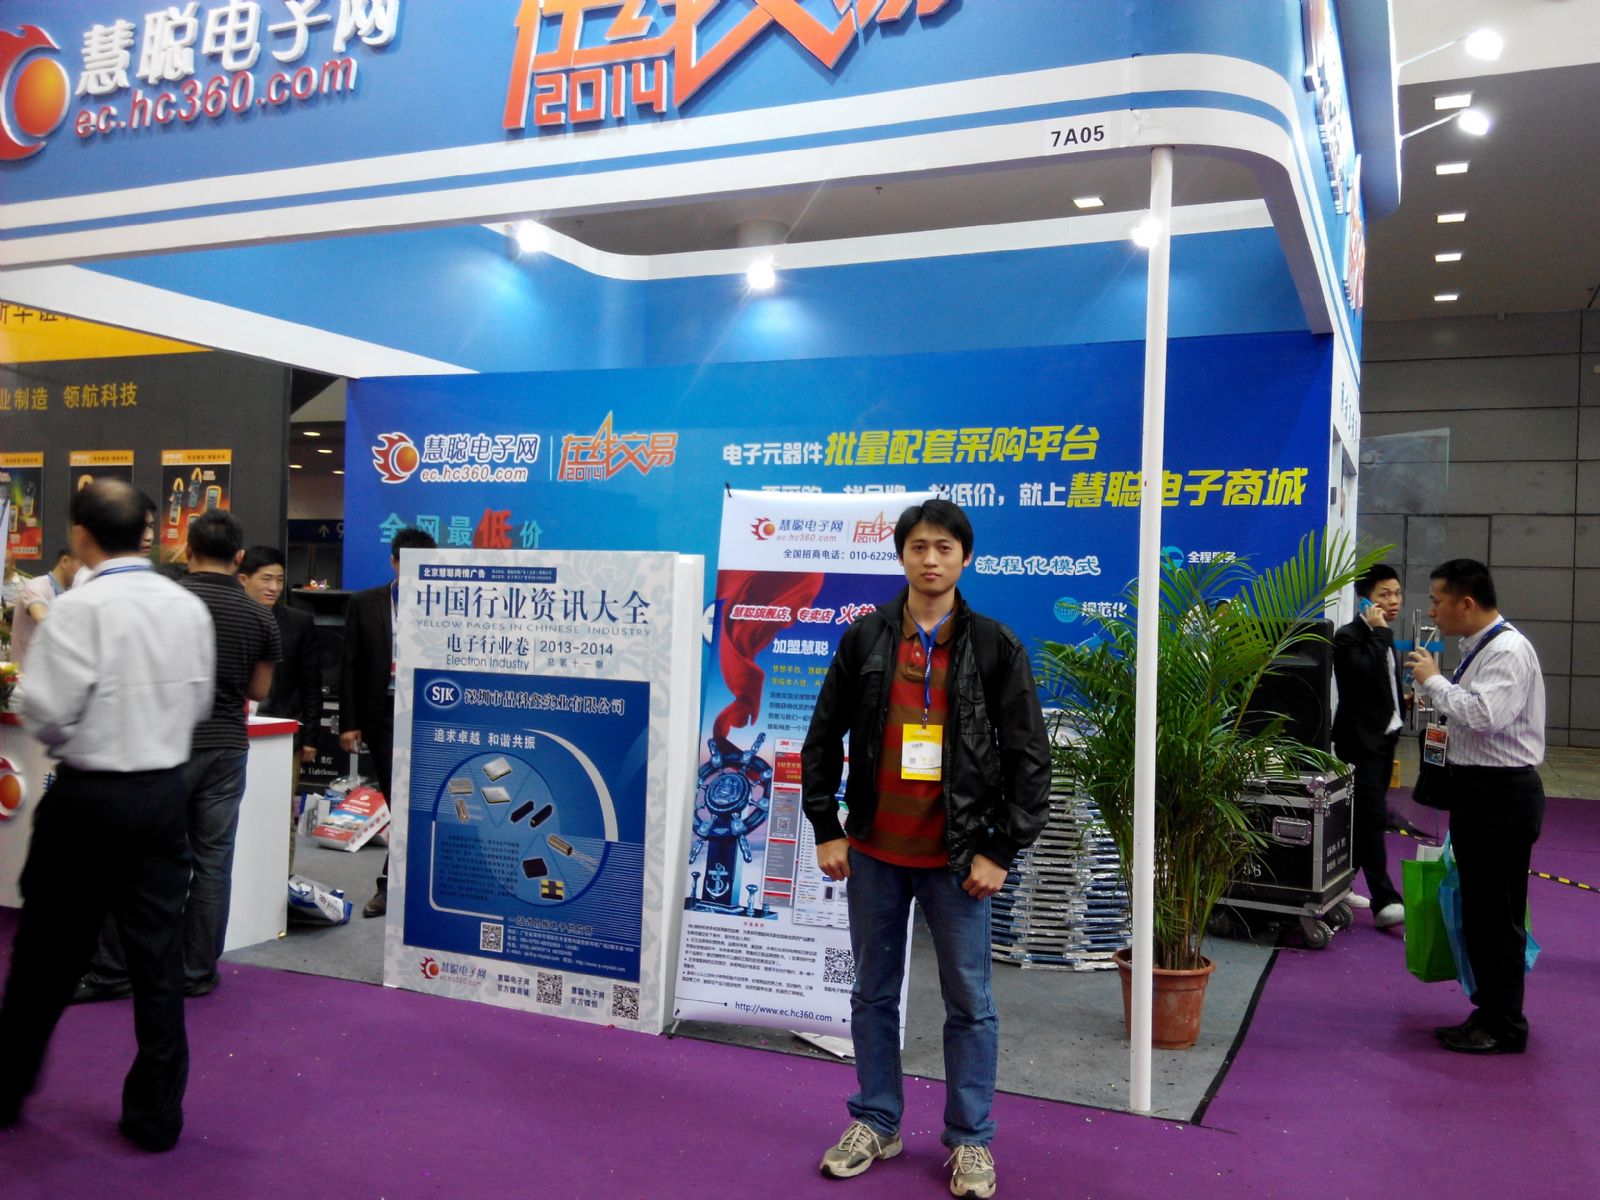 第二届中国电子信息博览会_慧聪网展会_福鹰电子出席嘉宾